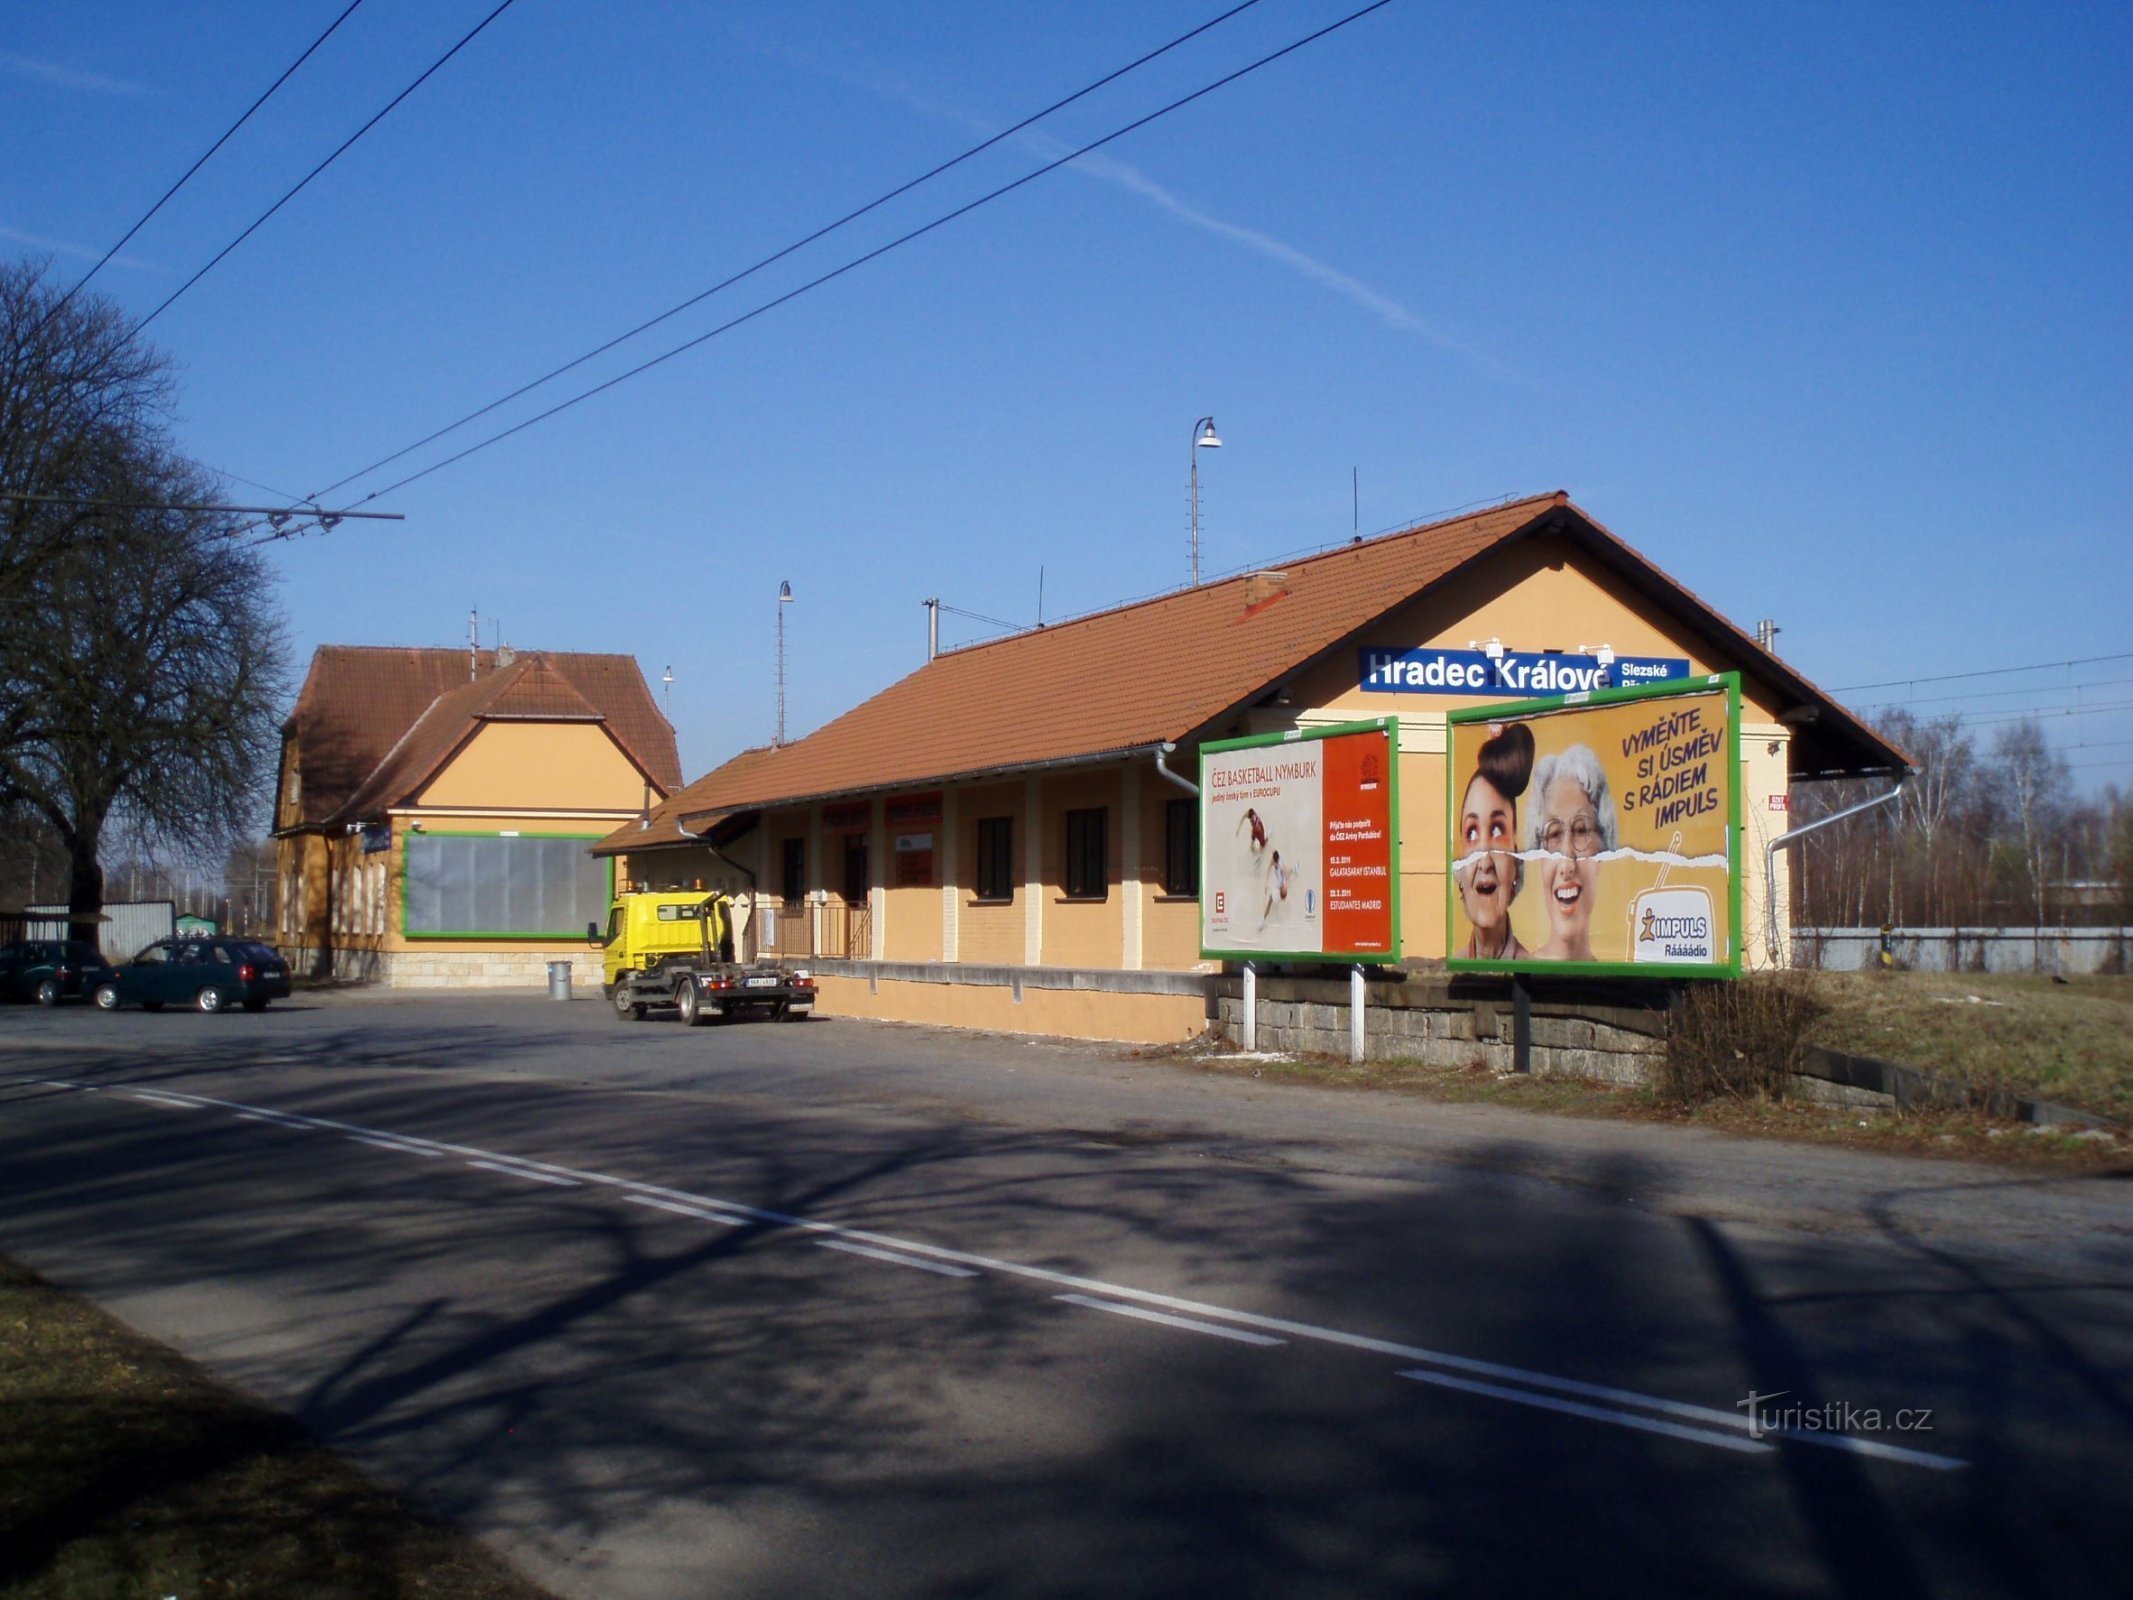 Bahnhof in schlesischen Vororten (Hradec Králové, 24.3.2011)